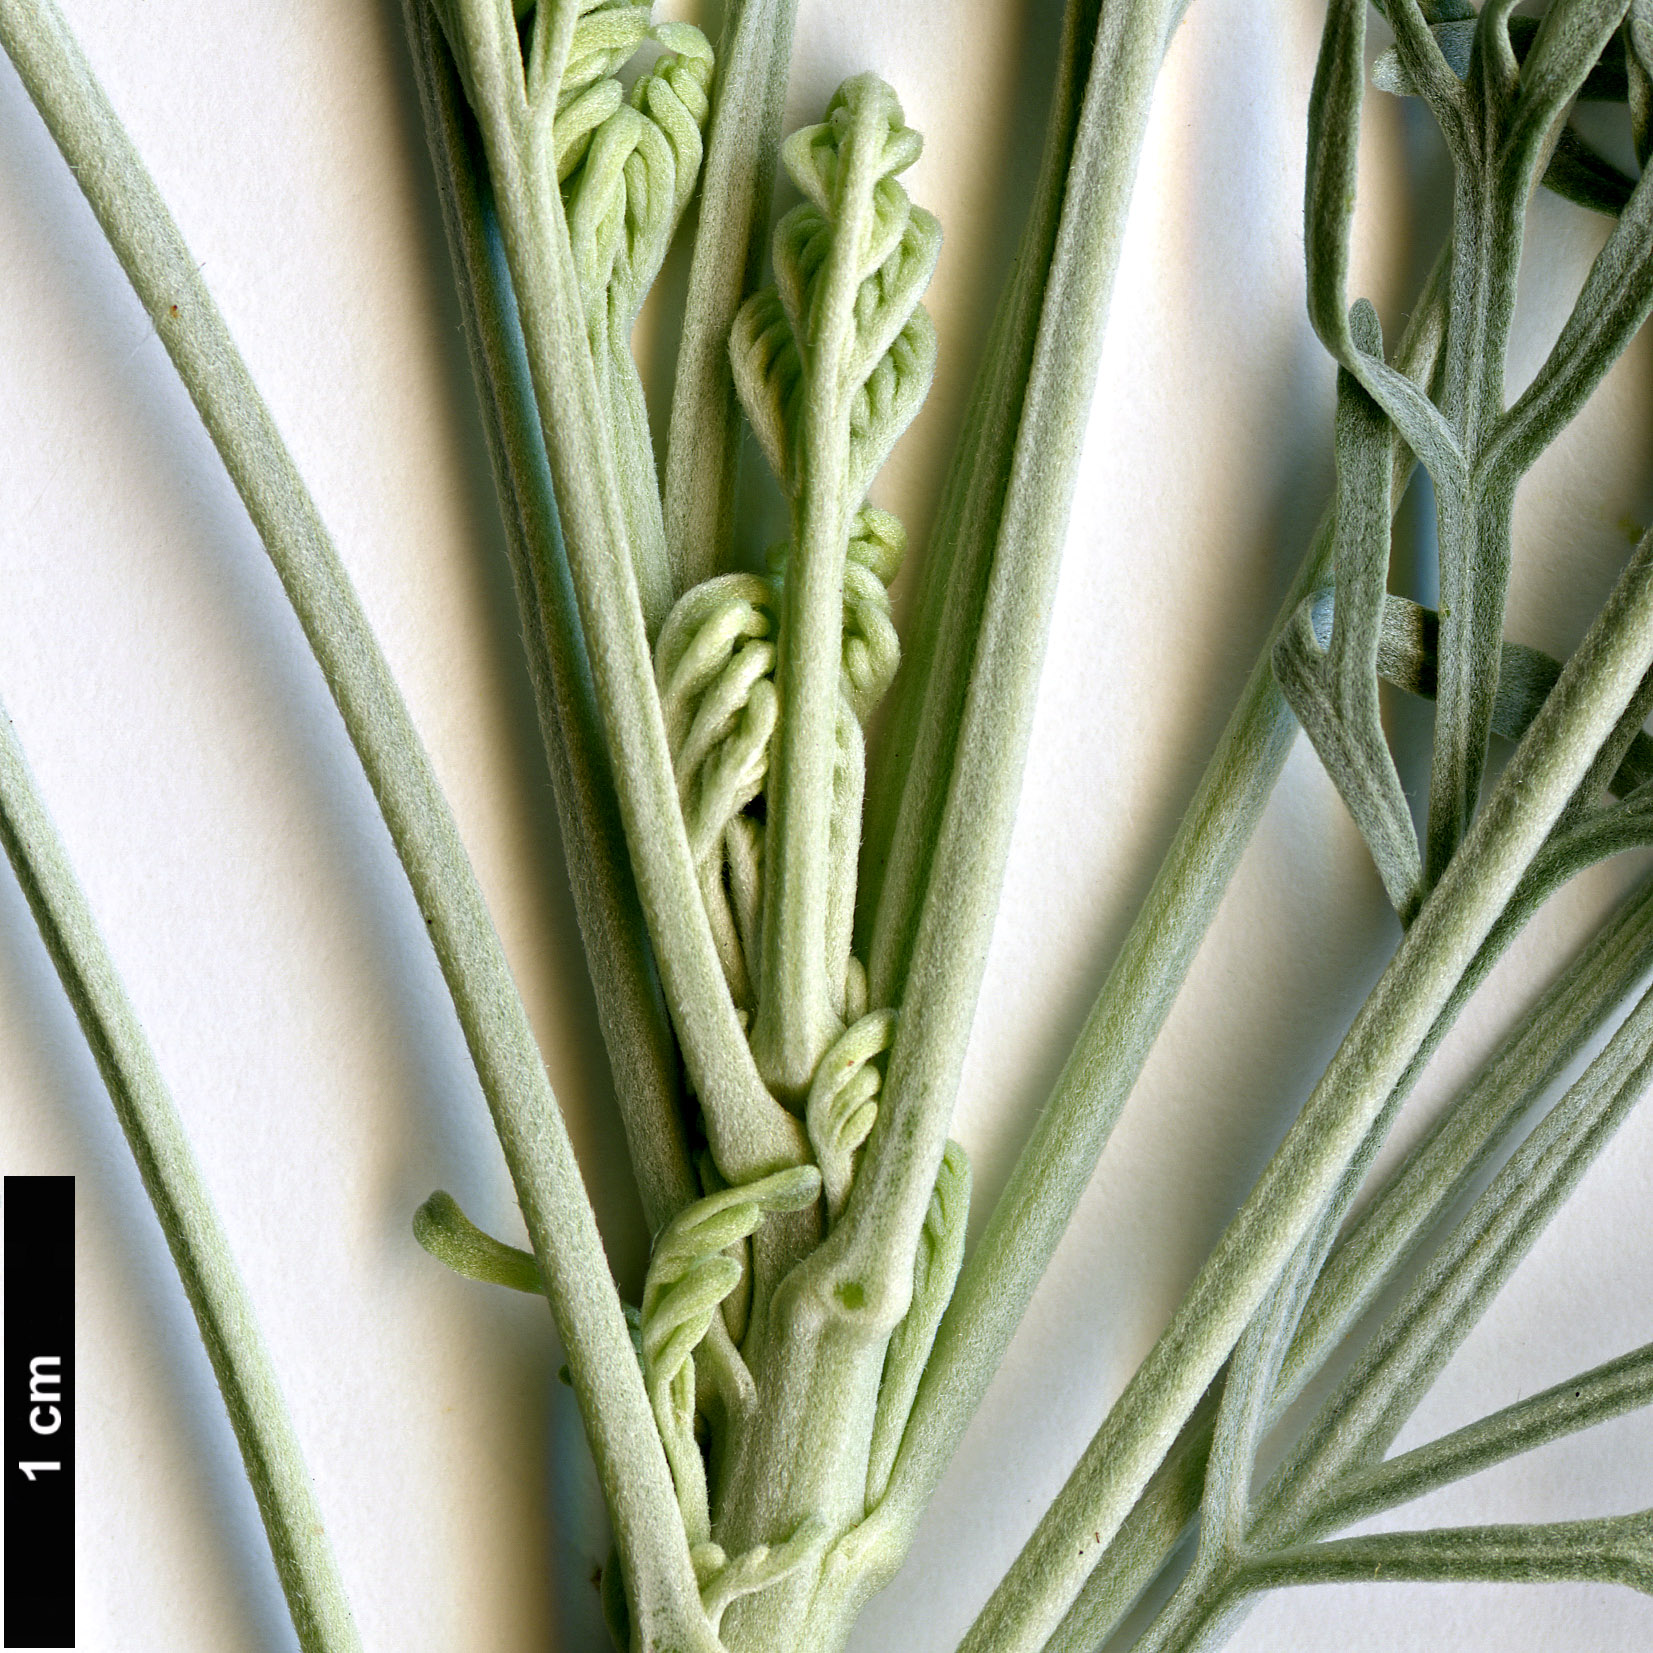 High resolution image: Family: Asteraceae - Genus: Artemisia - Taxon: arborescens